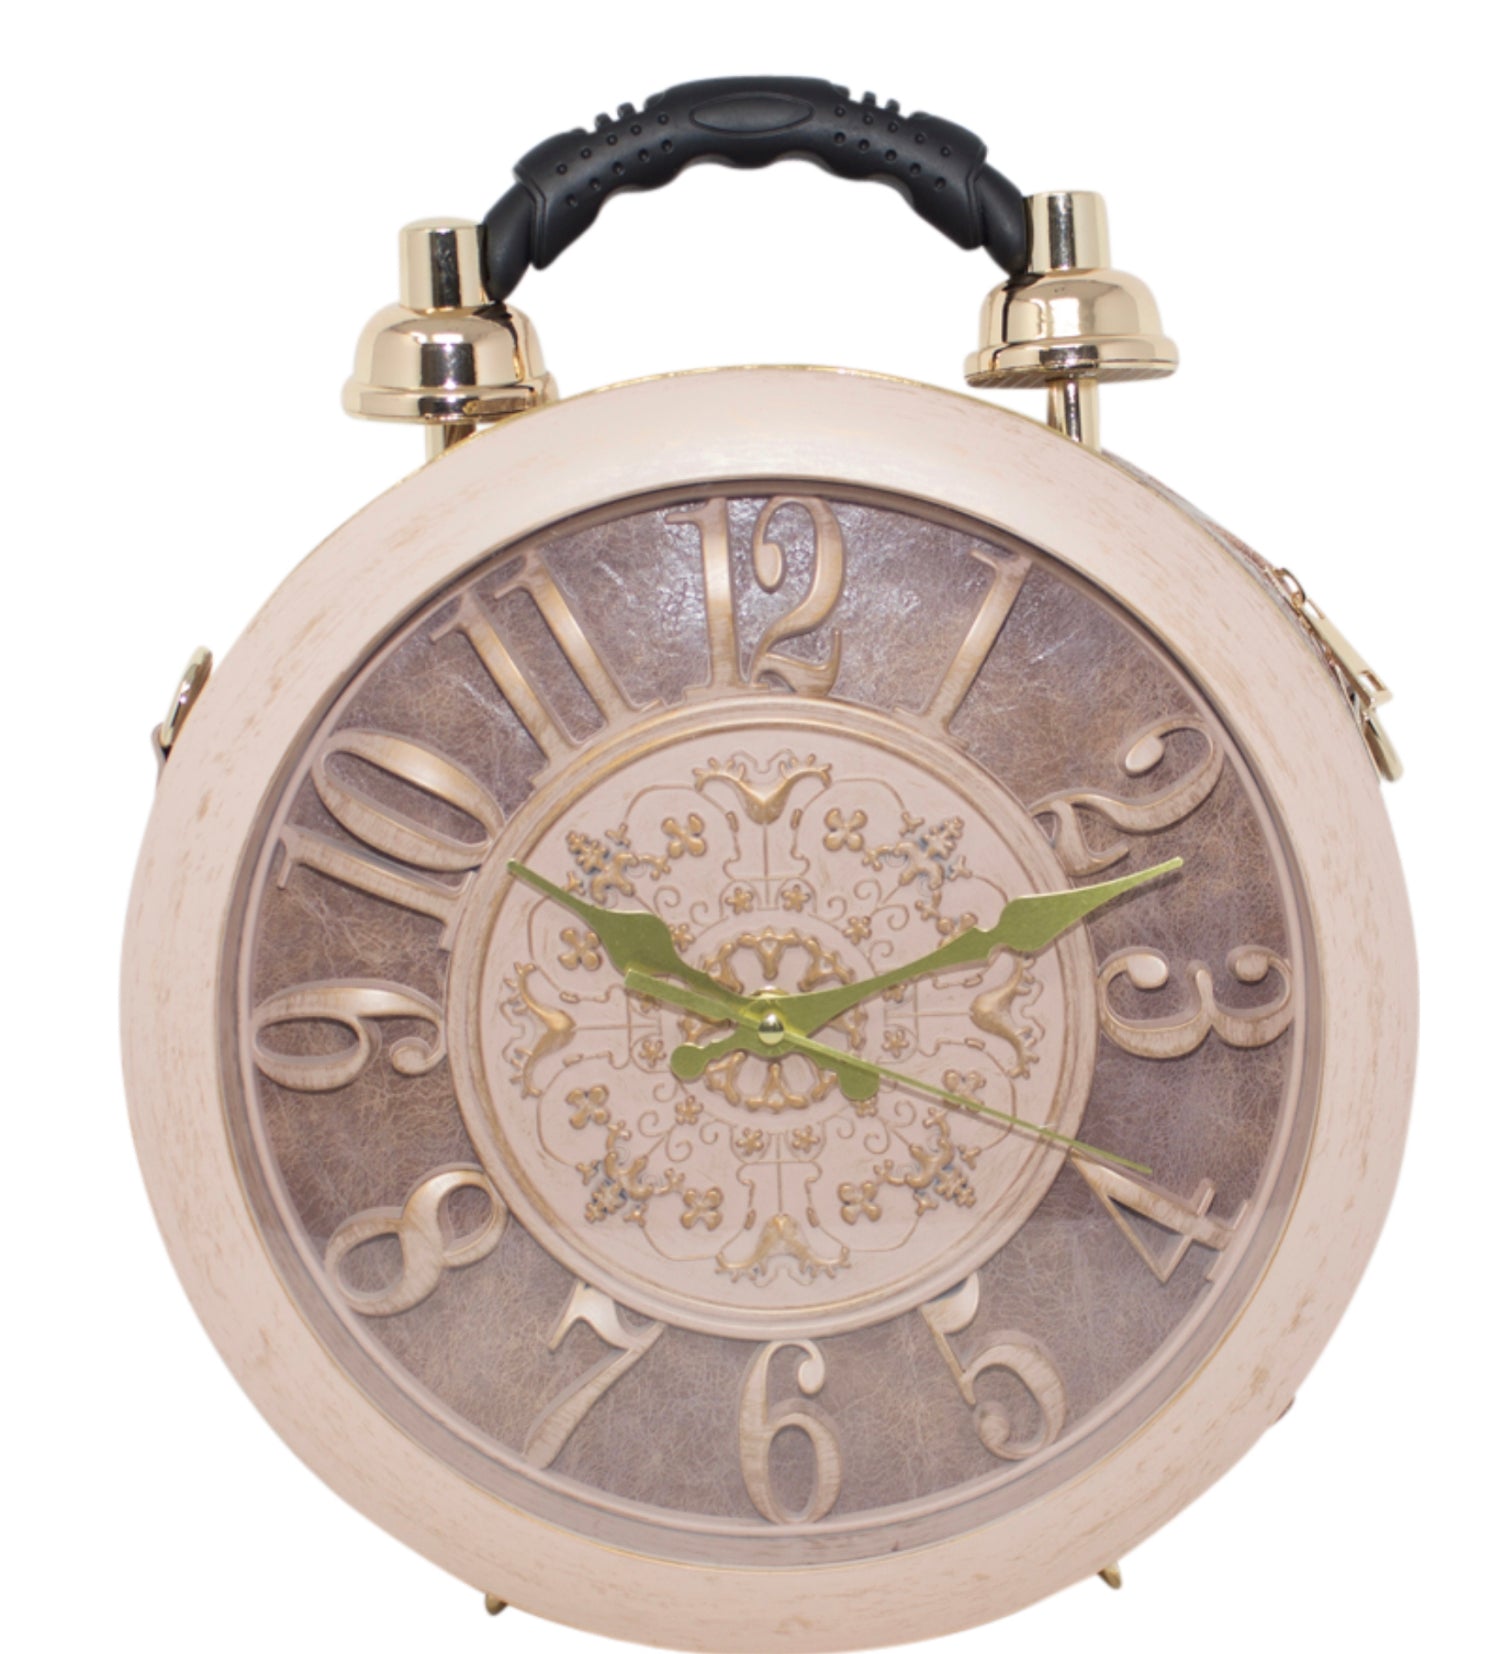 1980s Clock Purse | Retro Chic Vintage Accessory